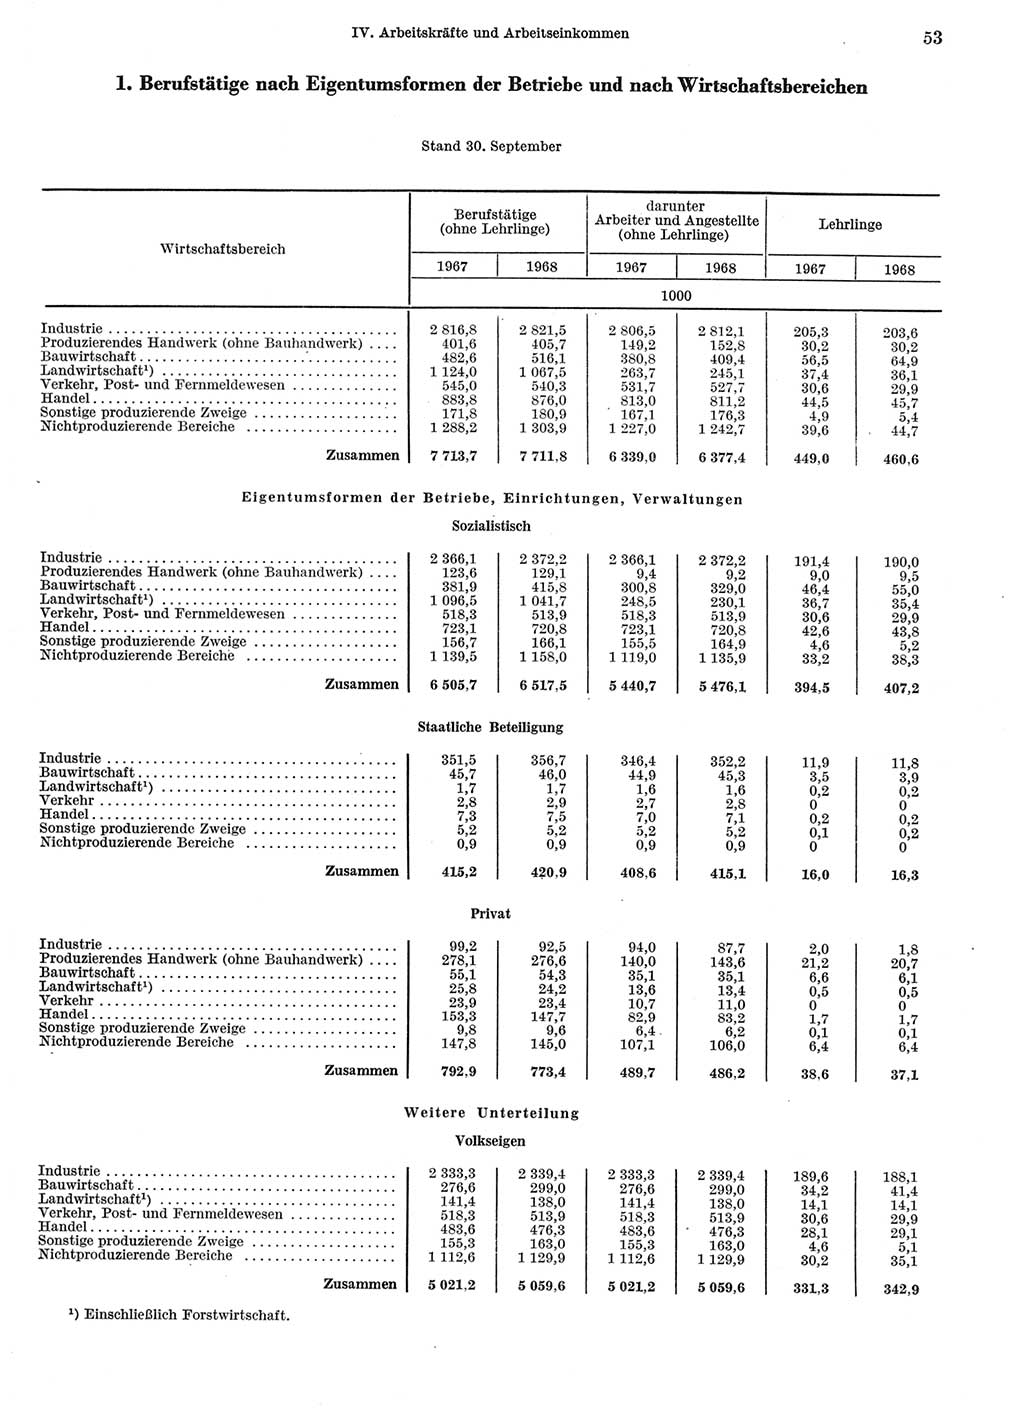 Statistisches Jahrbuch der Deutschen Demokratischen Republik (DDR) 1969, Seite 53 (Stat. Jb. DDR 1969, S. 53)